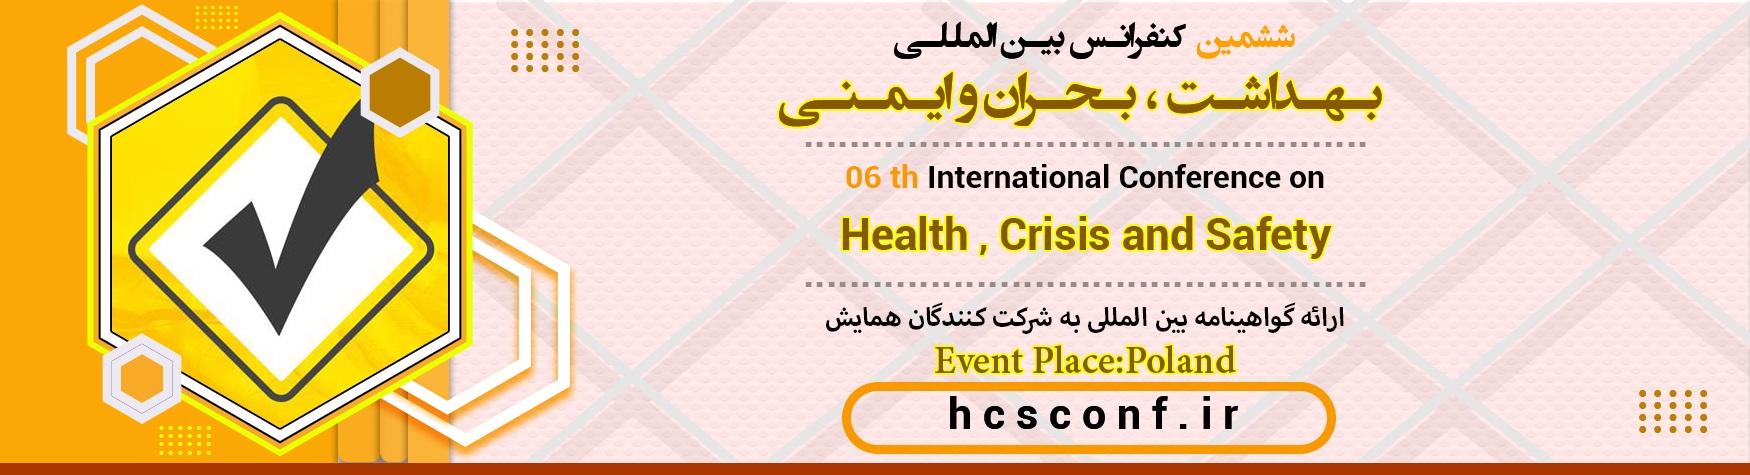 کنفرانس بین المللی بهداشت ، بحران و ایمنی